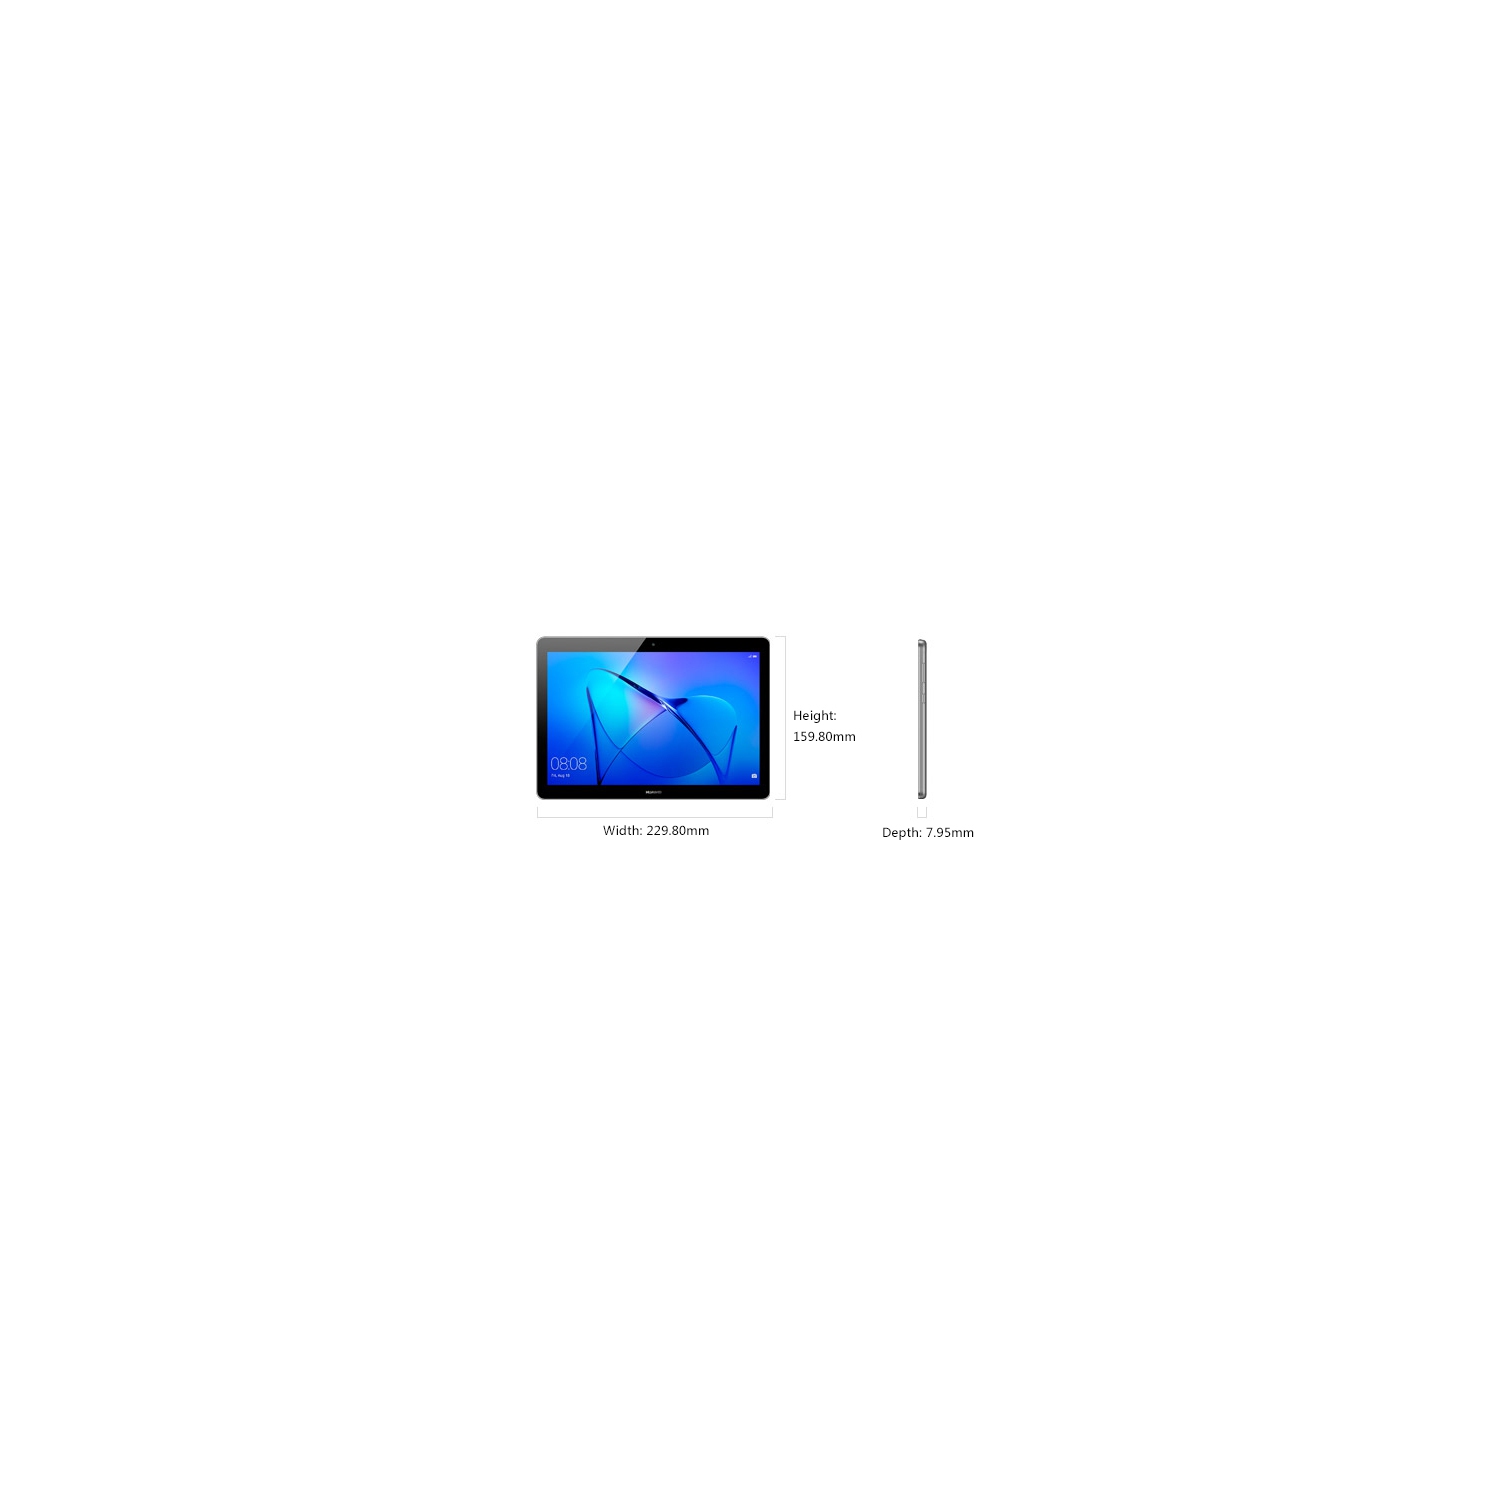 Huawei MediaPad T3 16 GB tablet - Unlocked - Wifi + Cellular - Silver - Open Box